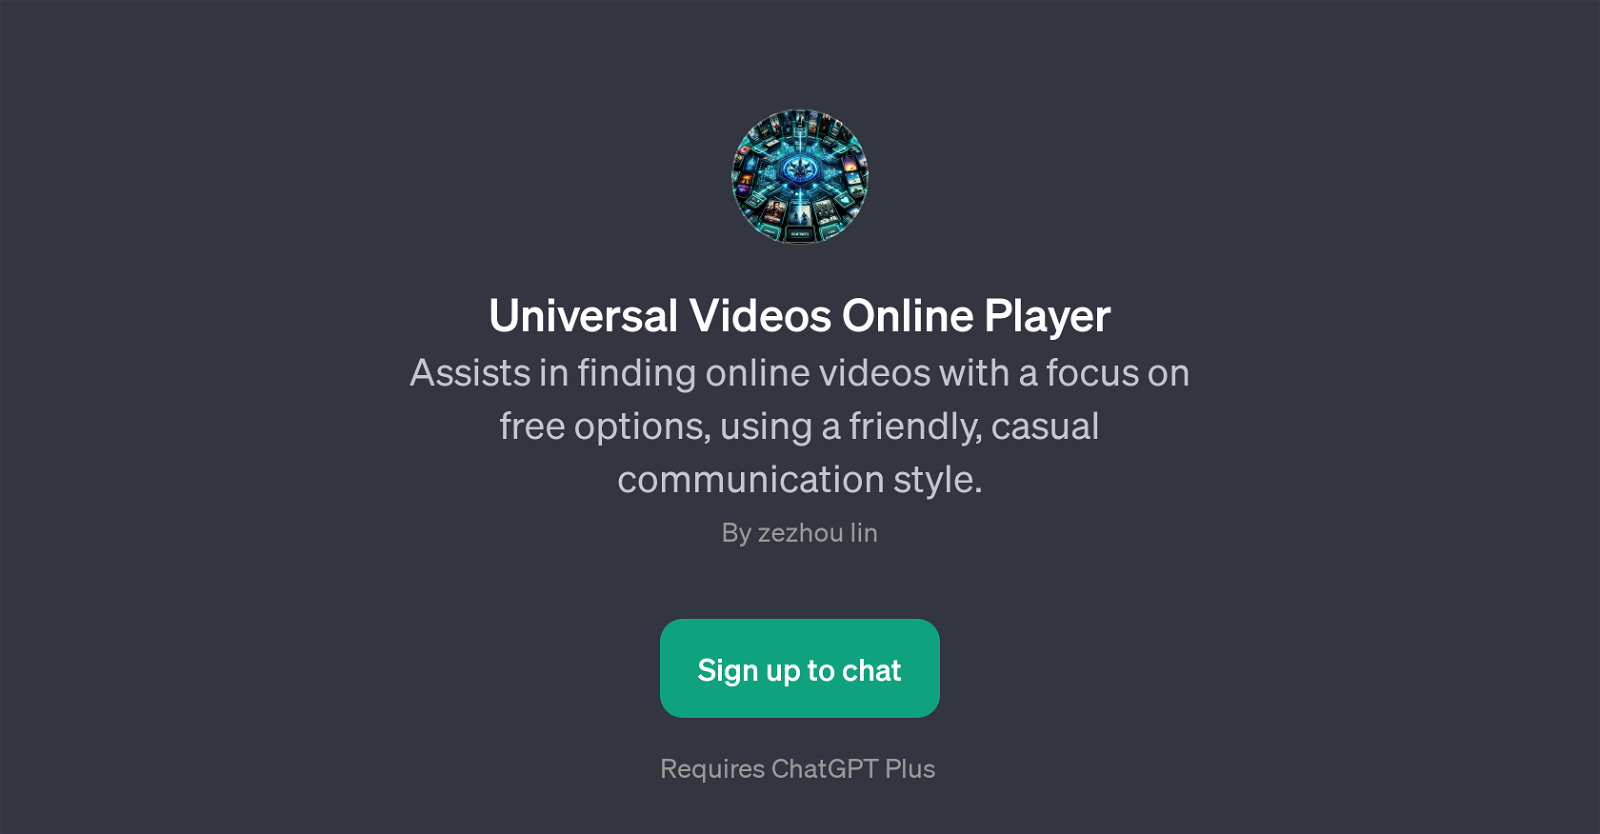 Universal Videos Online Player website